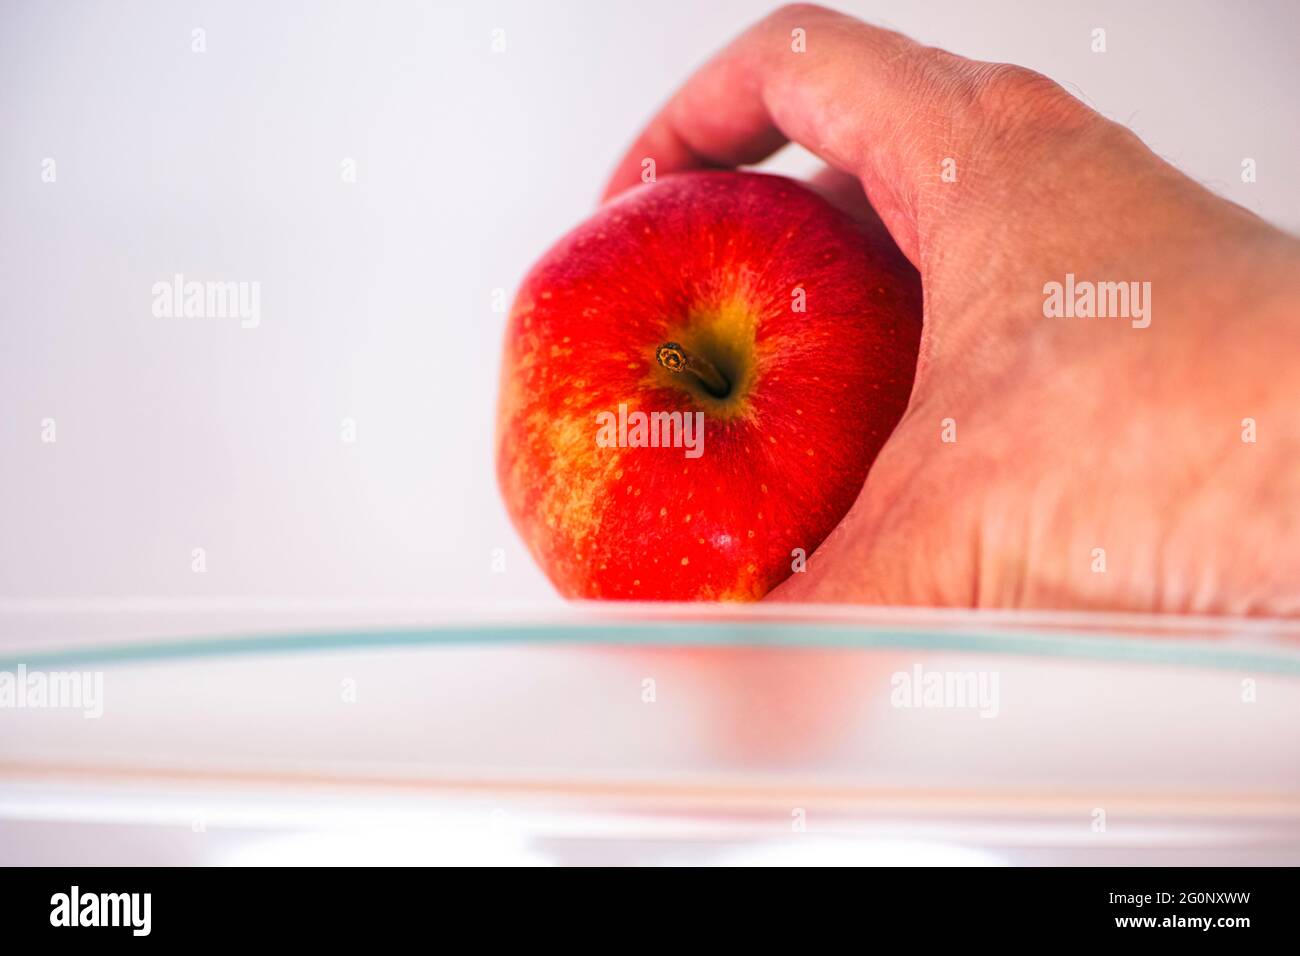 Mano di persona che prende la mela rossa dal ripiano del frigorifero. Primo piano. Foto Stock